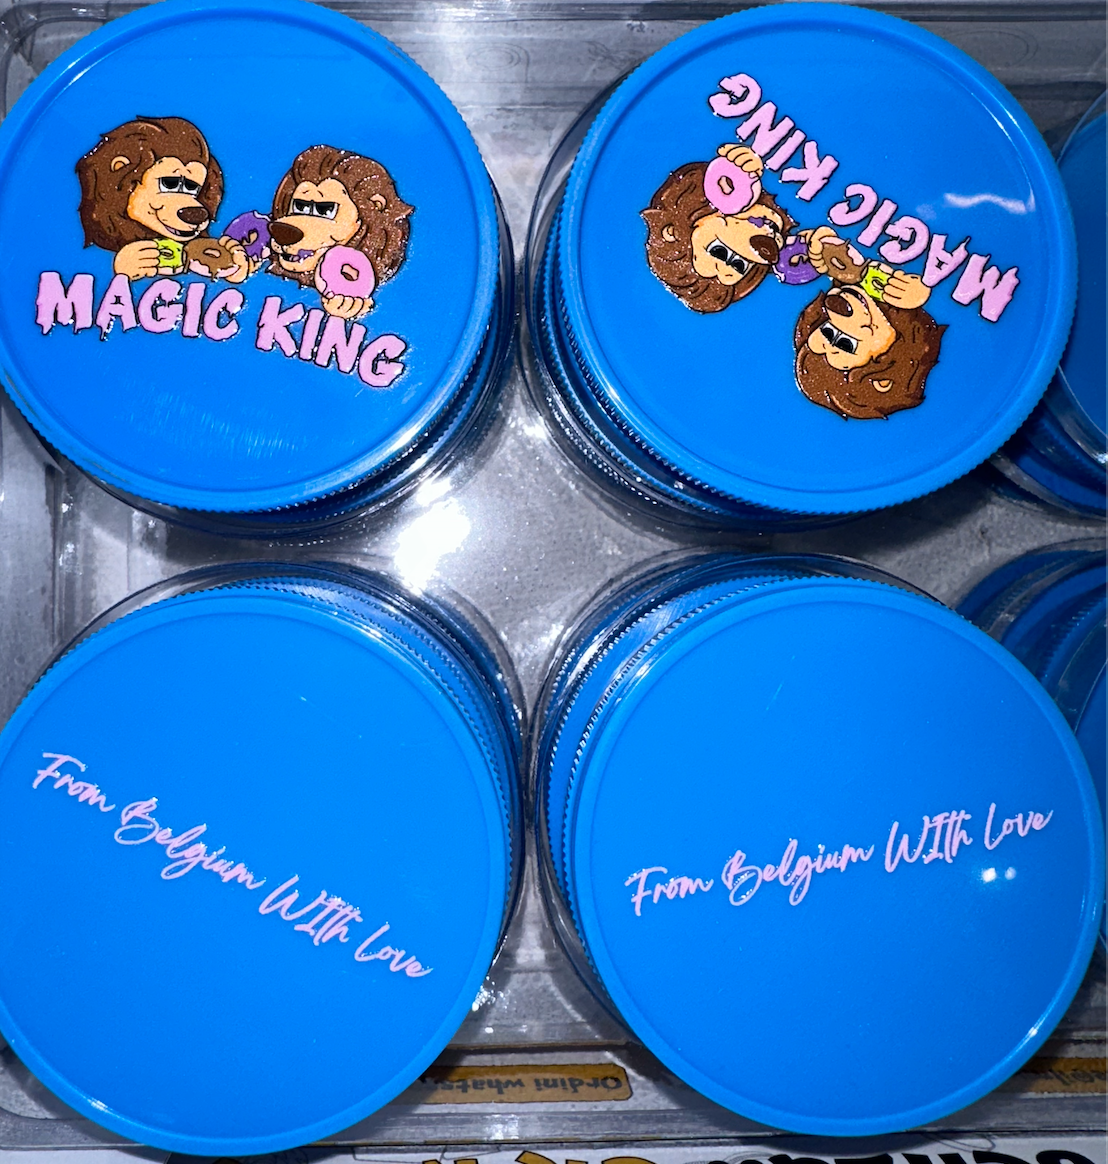 Magic King Grinder Plastique Bleu - Lions Donuts (2pièces)